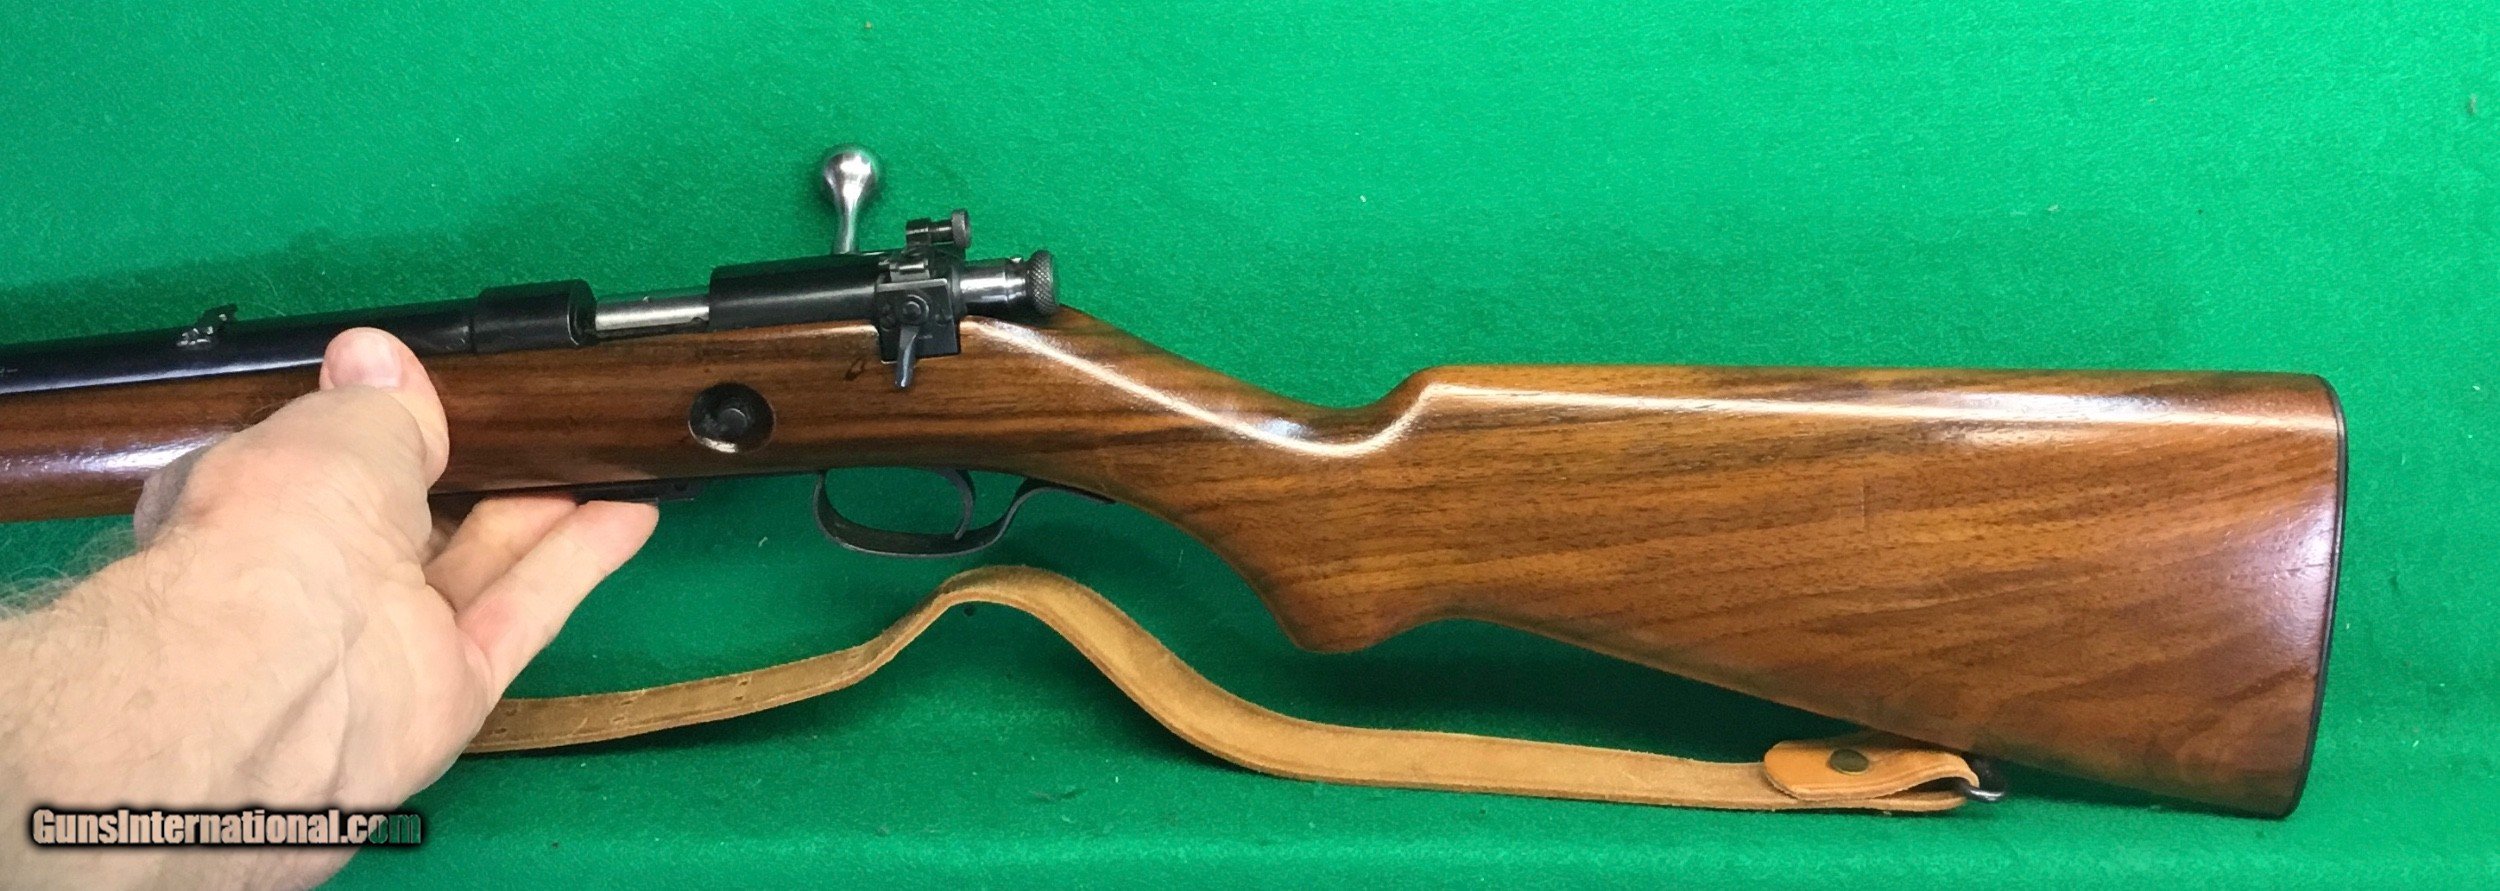 Rare Winchester Model 57 22 Rifle 6017